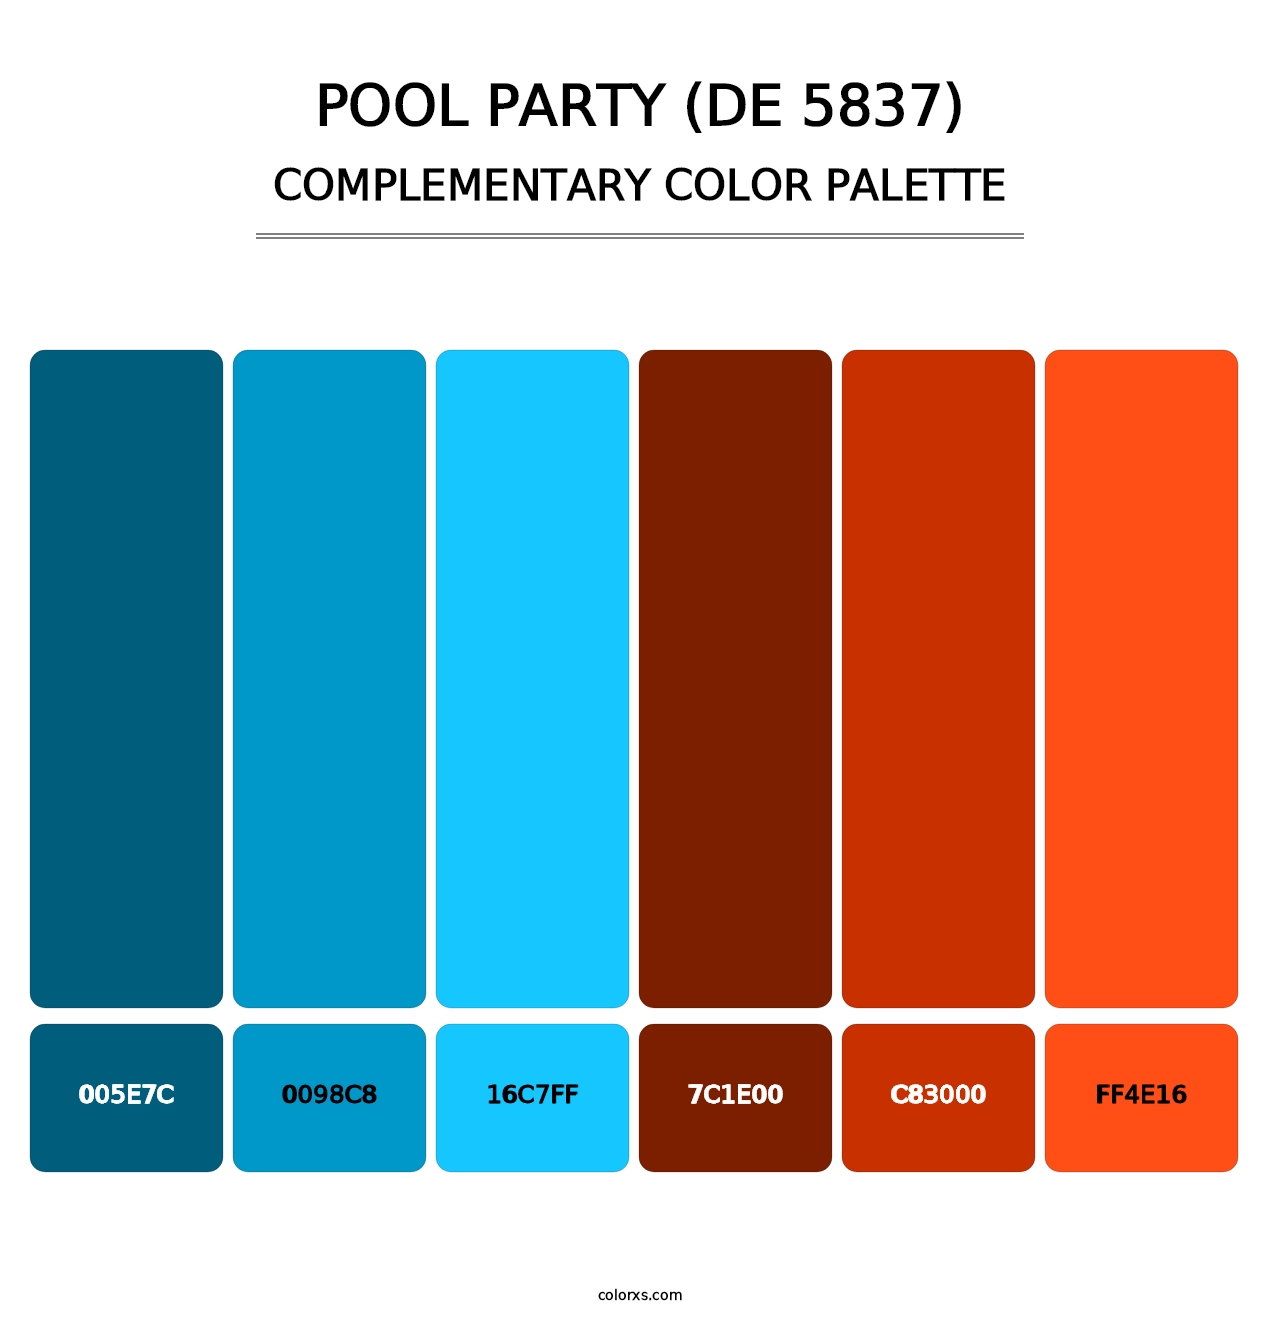 Pool Party (DE 5837) - Complementary Color Palette